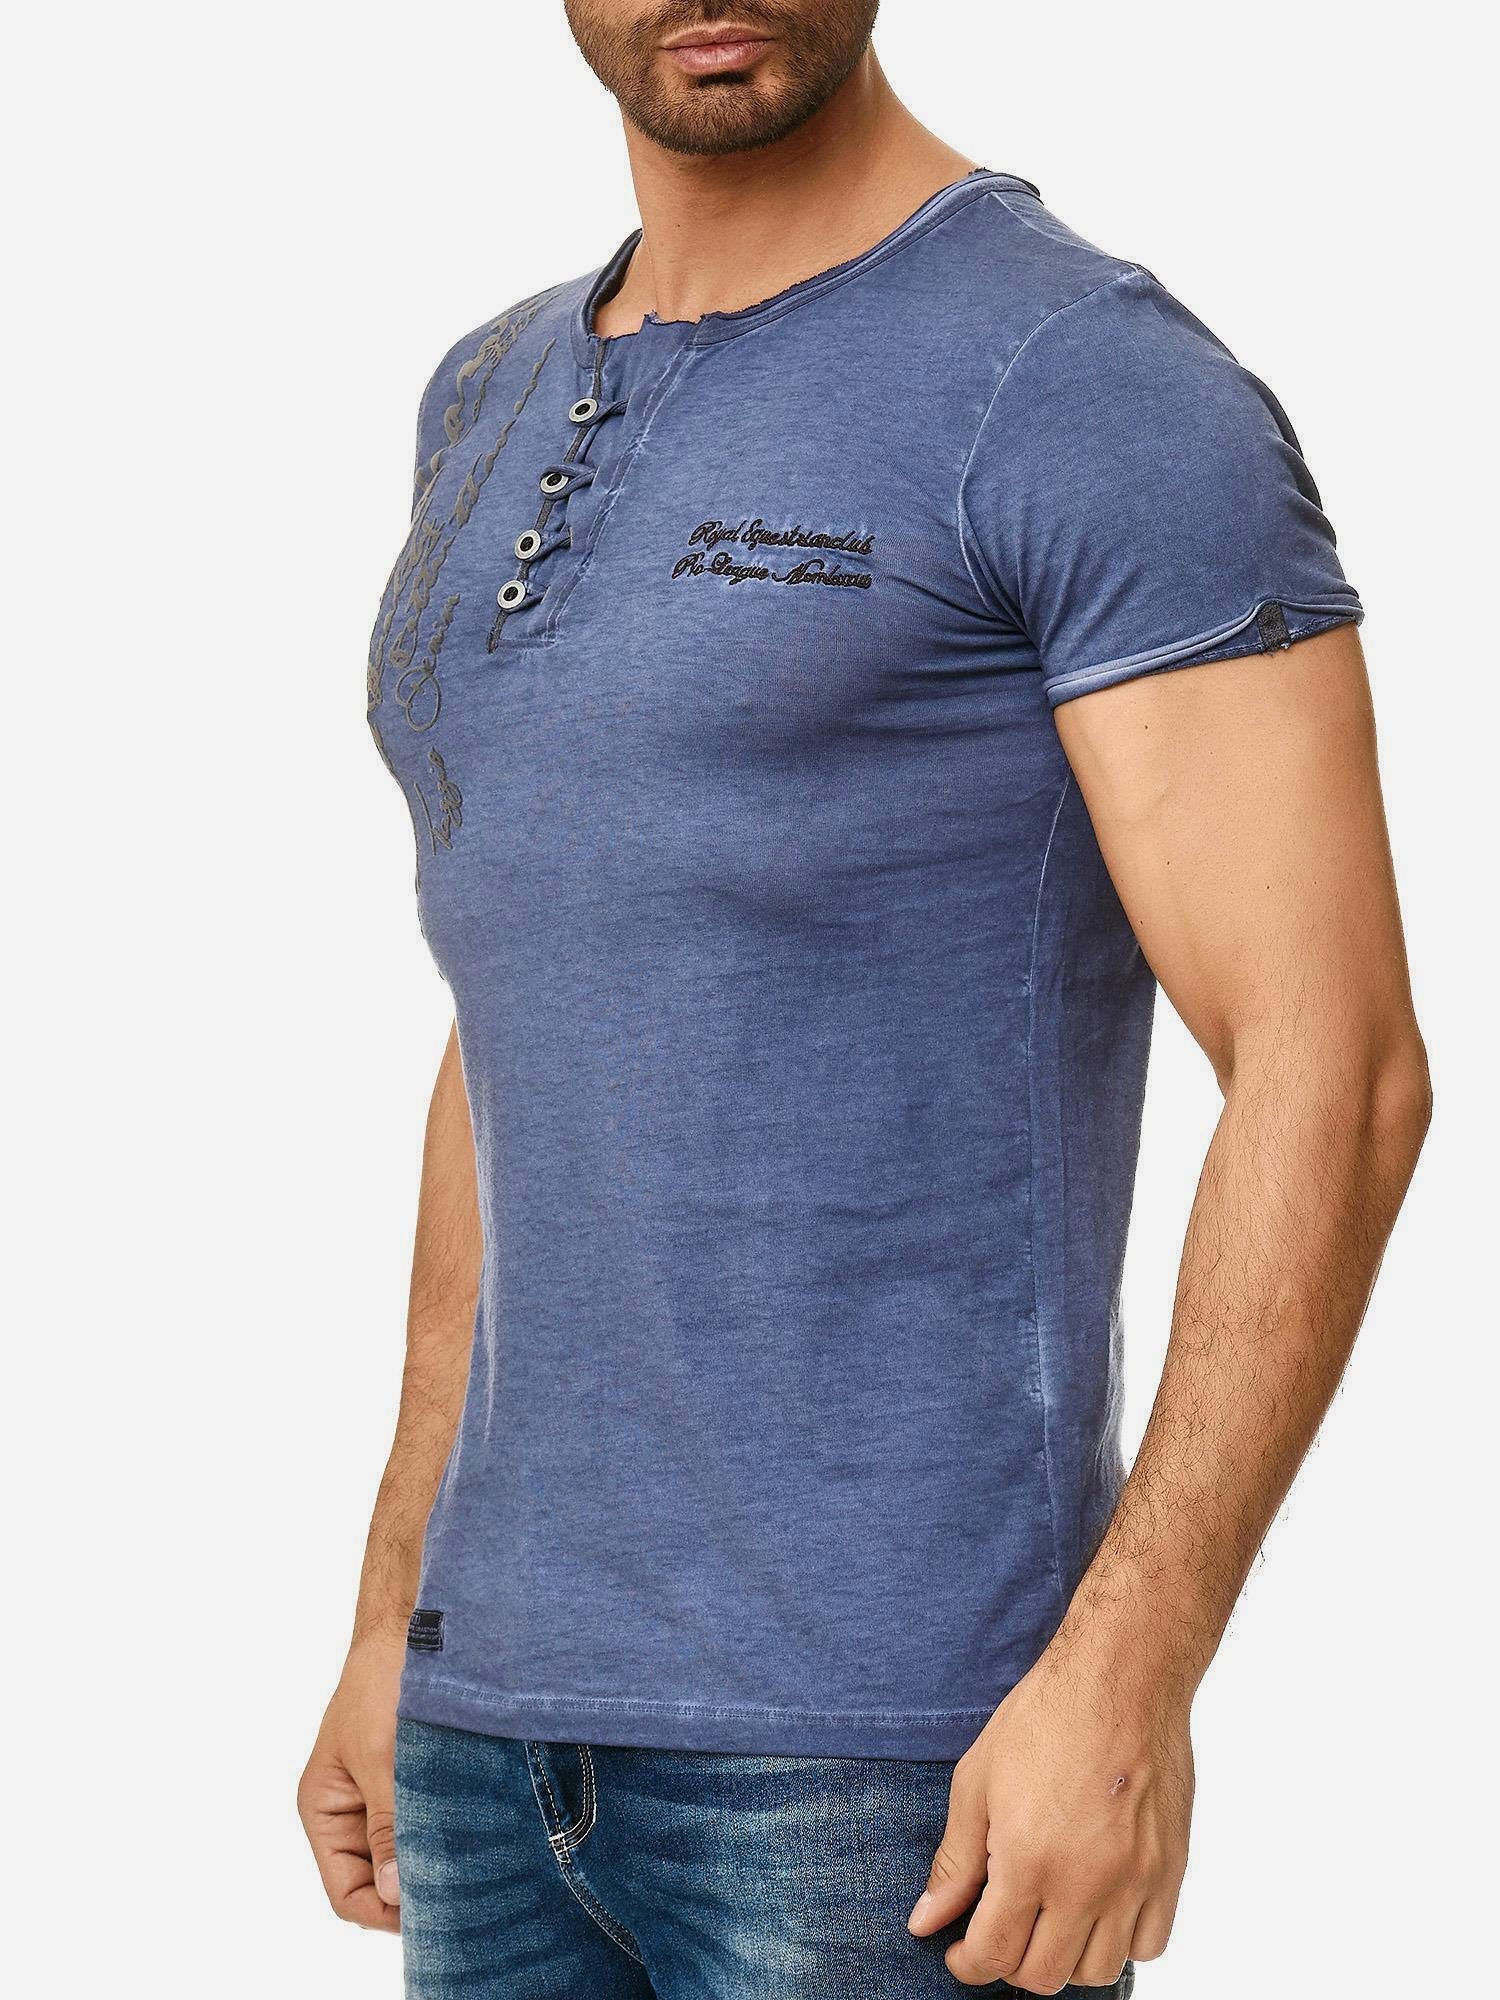 Ölwaschung Rundhalsshirt T-Shirt offenem Used Look in Tazzio und Kragen 4050-1 dezentem mit navy